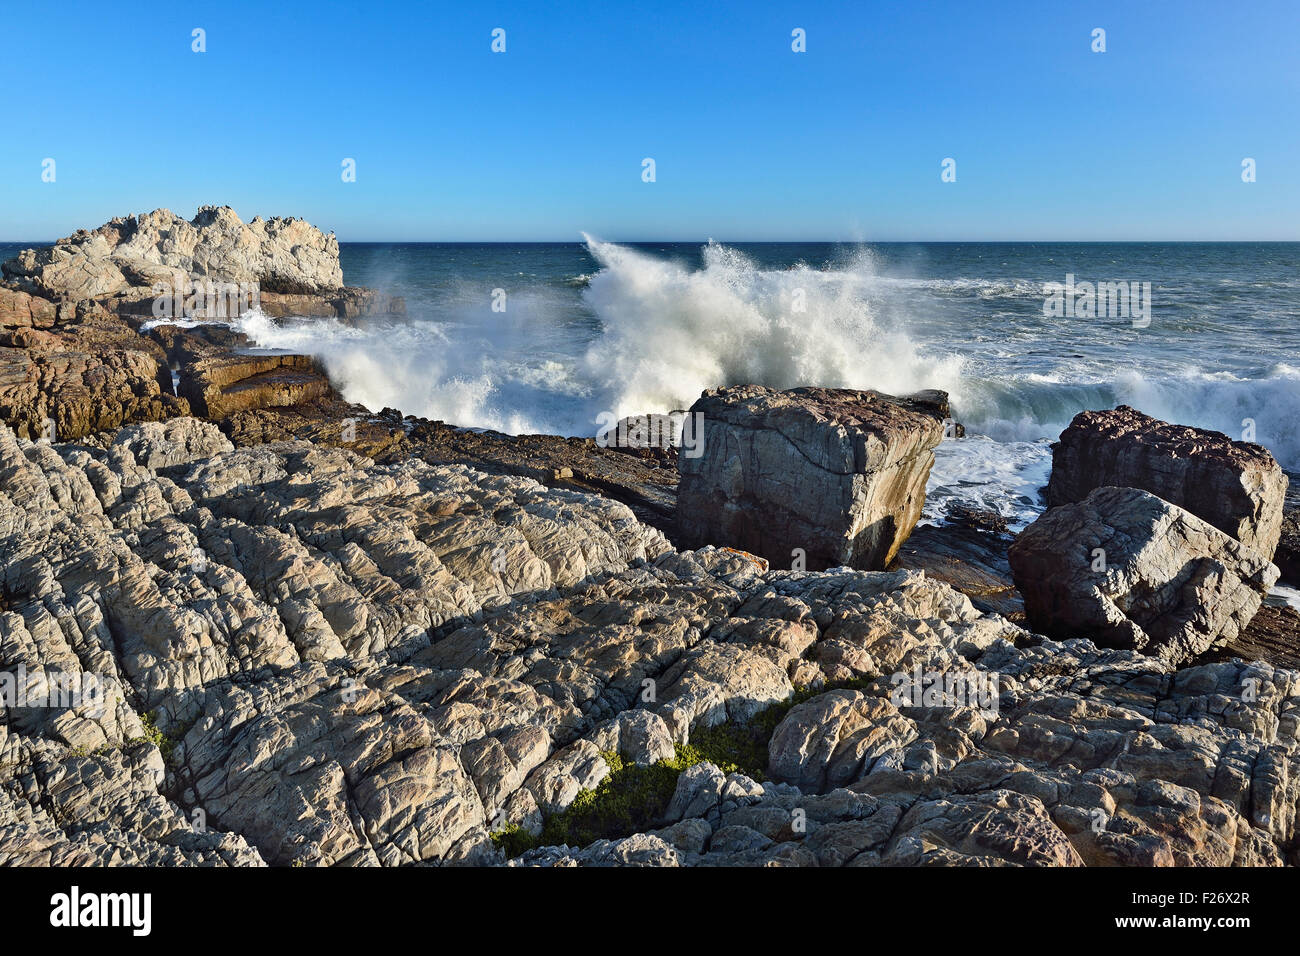 South Africa, Hermanus, the Atlantic Ocean Stock Photo